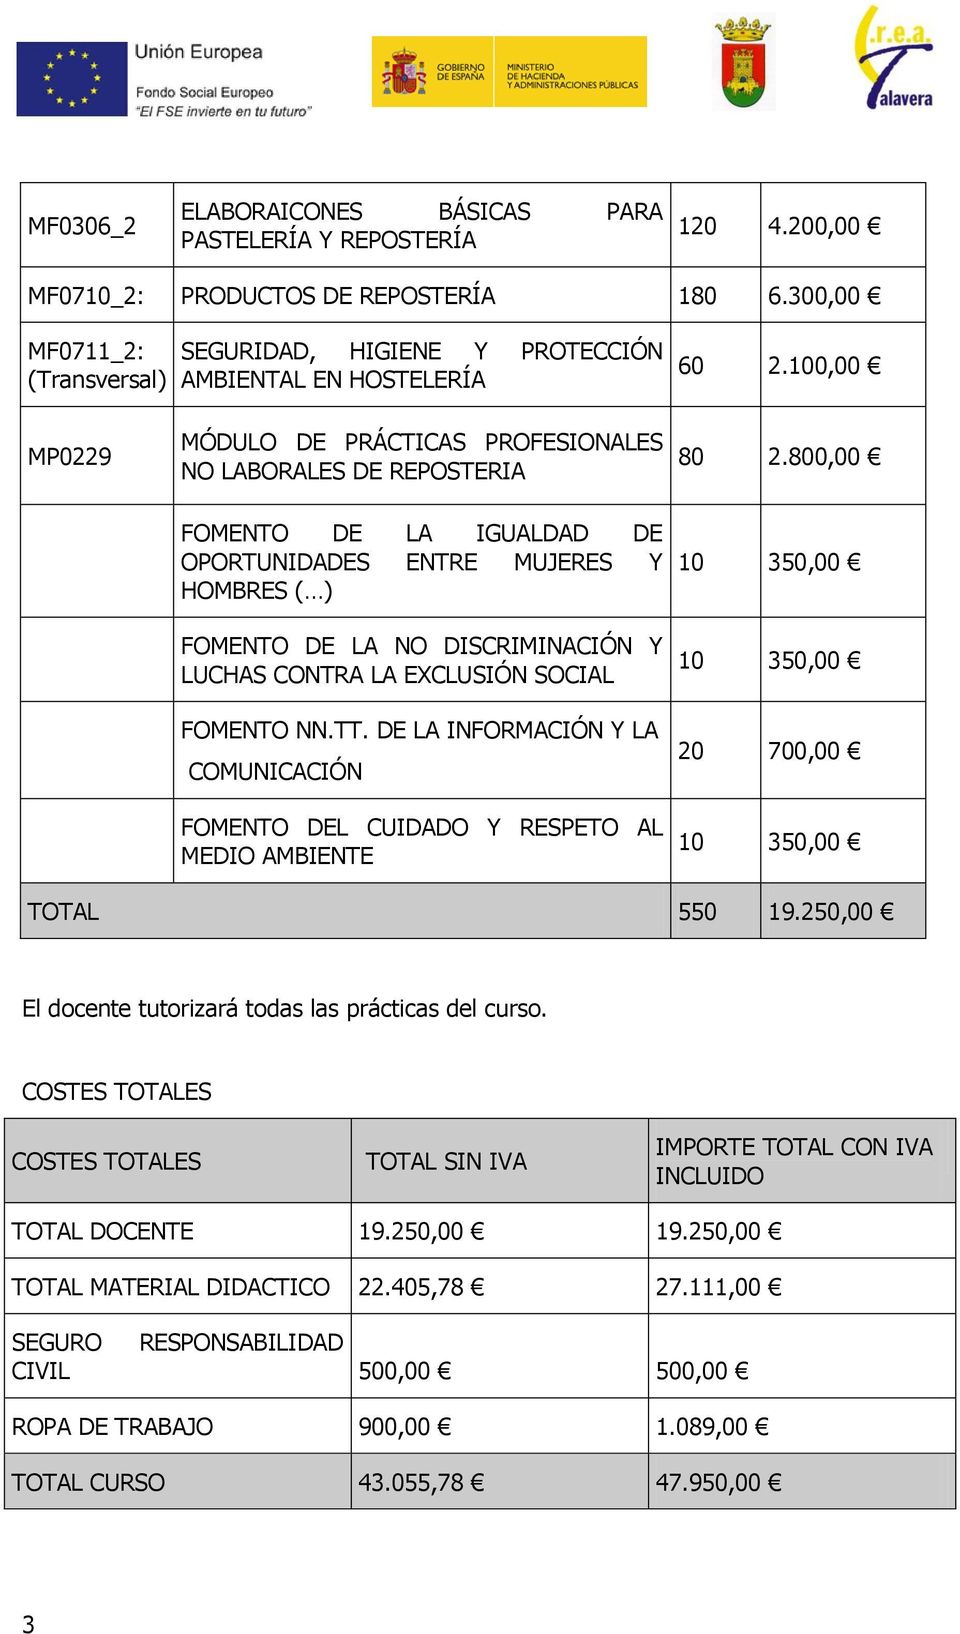 100,00 MP0229 MÓDULO DE PRÁCTICAS PROFESIONALES NO LABORALES DE REPOSTERIA FOMENTO DE LA IGUALDAD DE OPORTUNIDADES ENTRE MUJERES Y HOMBRES ( ) FOMENTO DE LA NO DISCRIMINACIÓN Y LUCHAS CONTRA LA